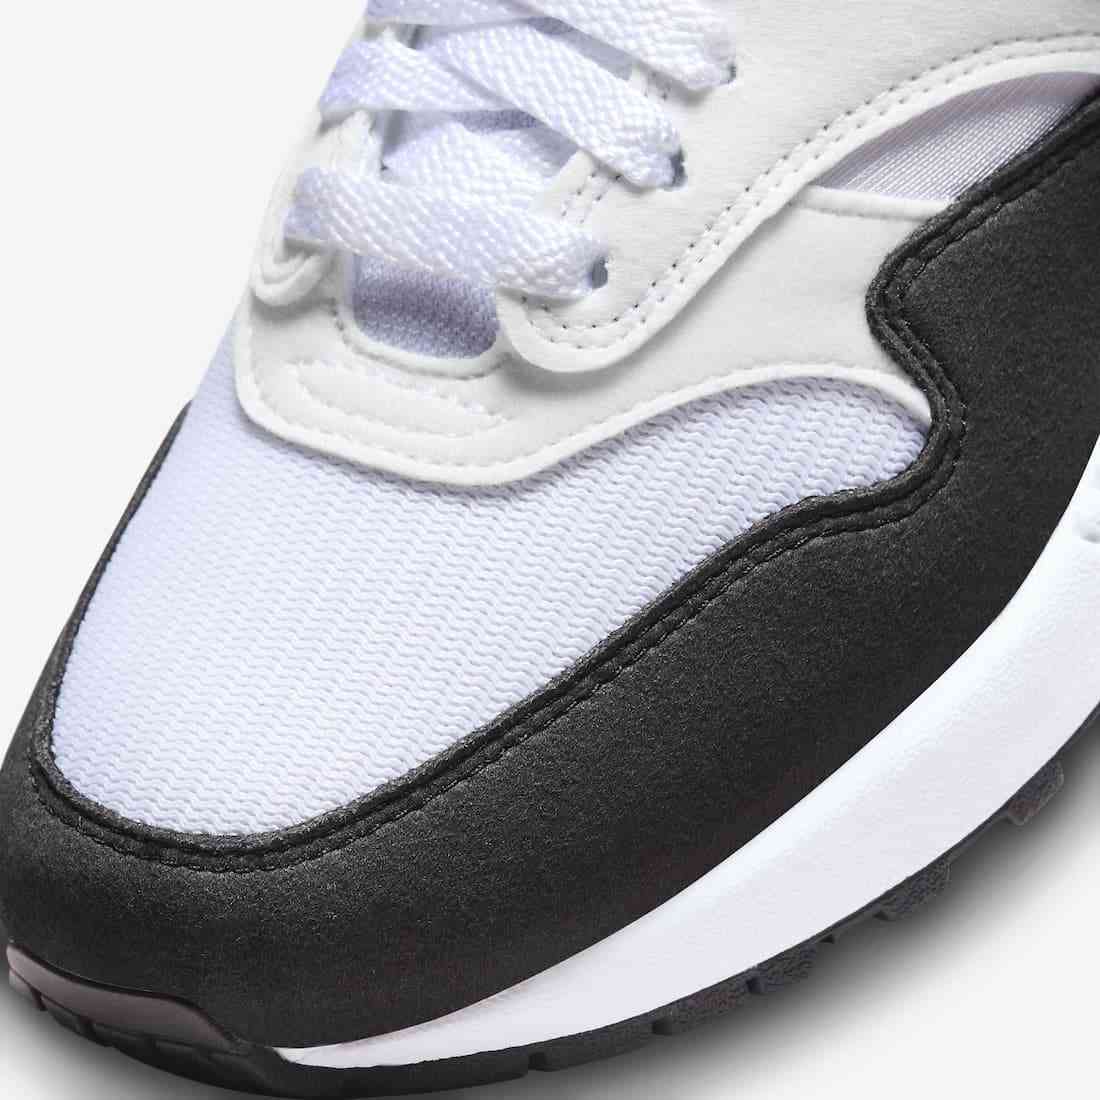 Nike Air Max 1 White Black Neutral Grey